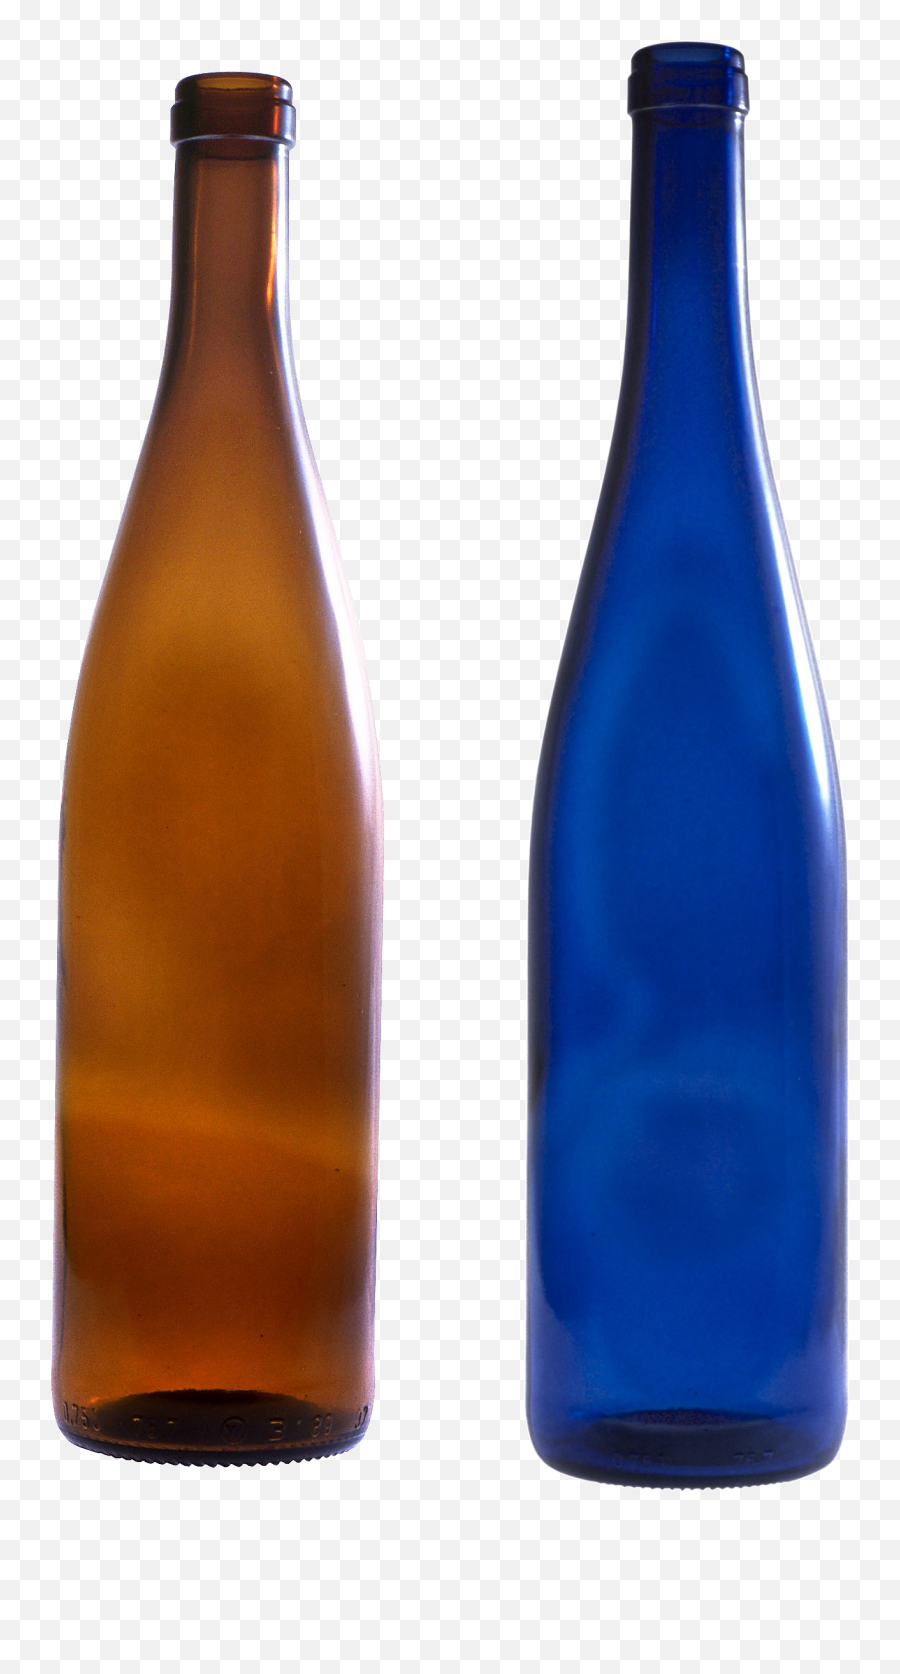 Bottle Png Images Free Download - Transparent Png Beer Bottle Background,Beer Bottles Png